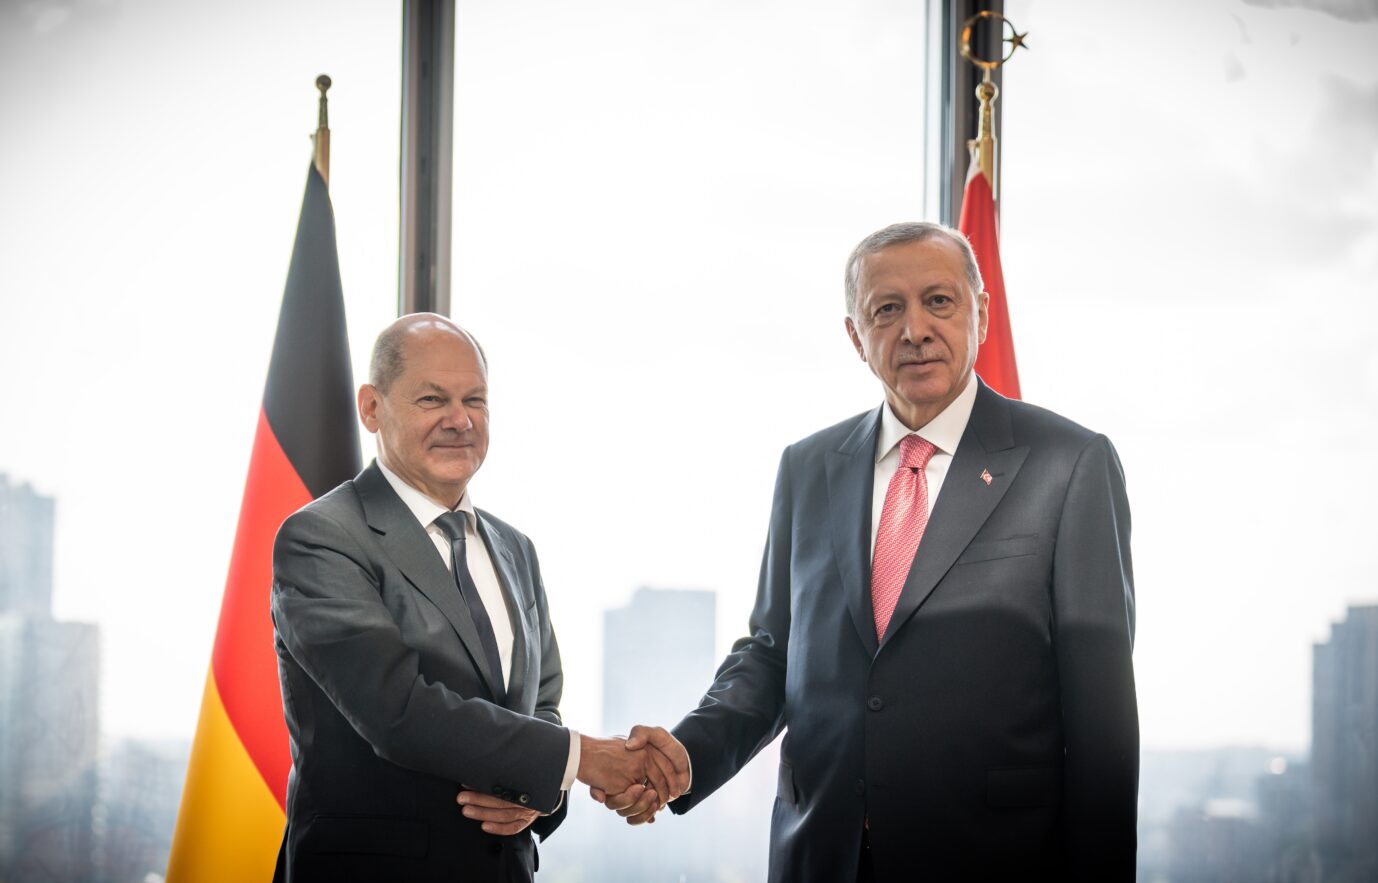 Bundeskanzler Olaf Scholz (SPD) (l.) schüttelt dem türkischen Präsidenten Recep Tayyip Erdogan die Hand.